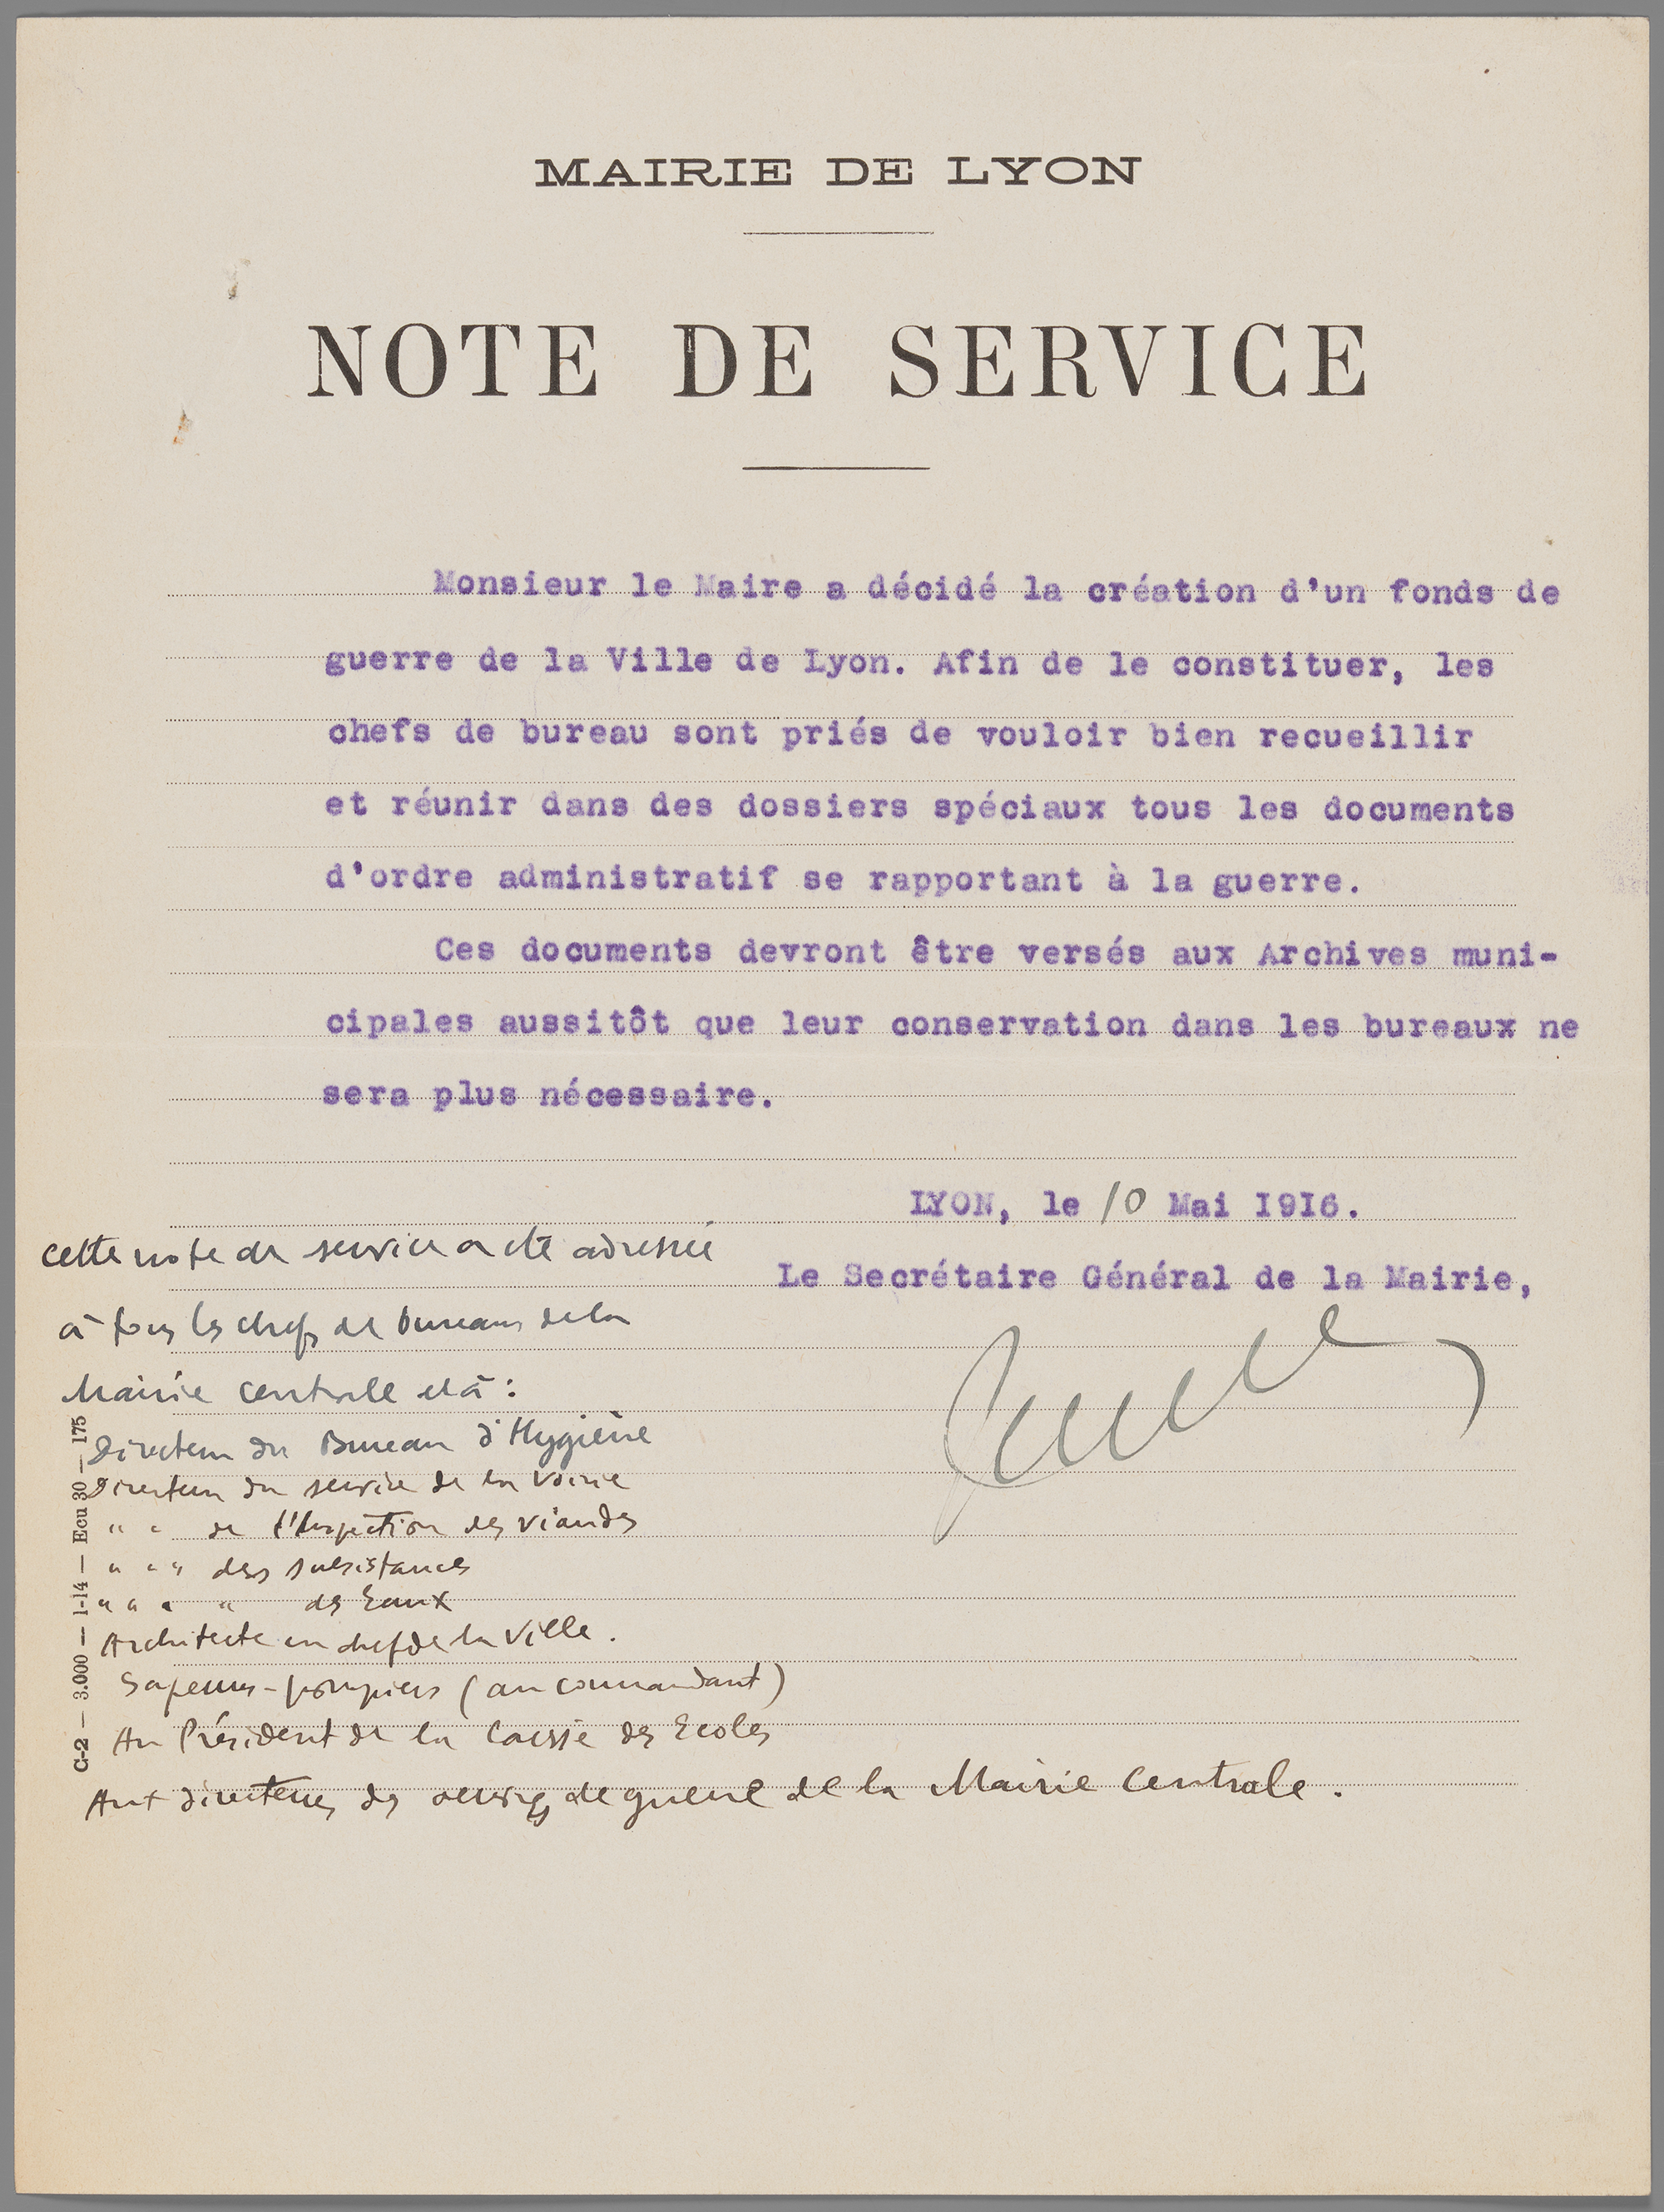 Mairie de Lyon, note de service relative à la conservation des archives de la guerre, 10 mai 1916 - 1229wp/03